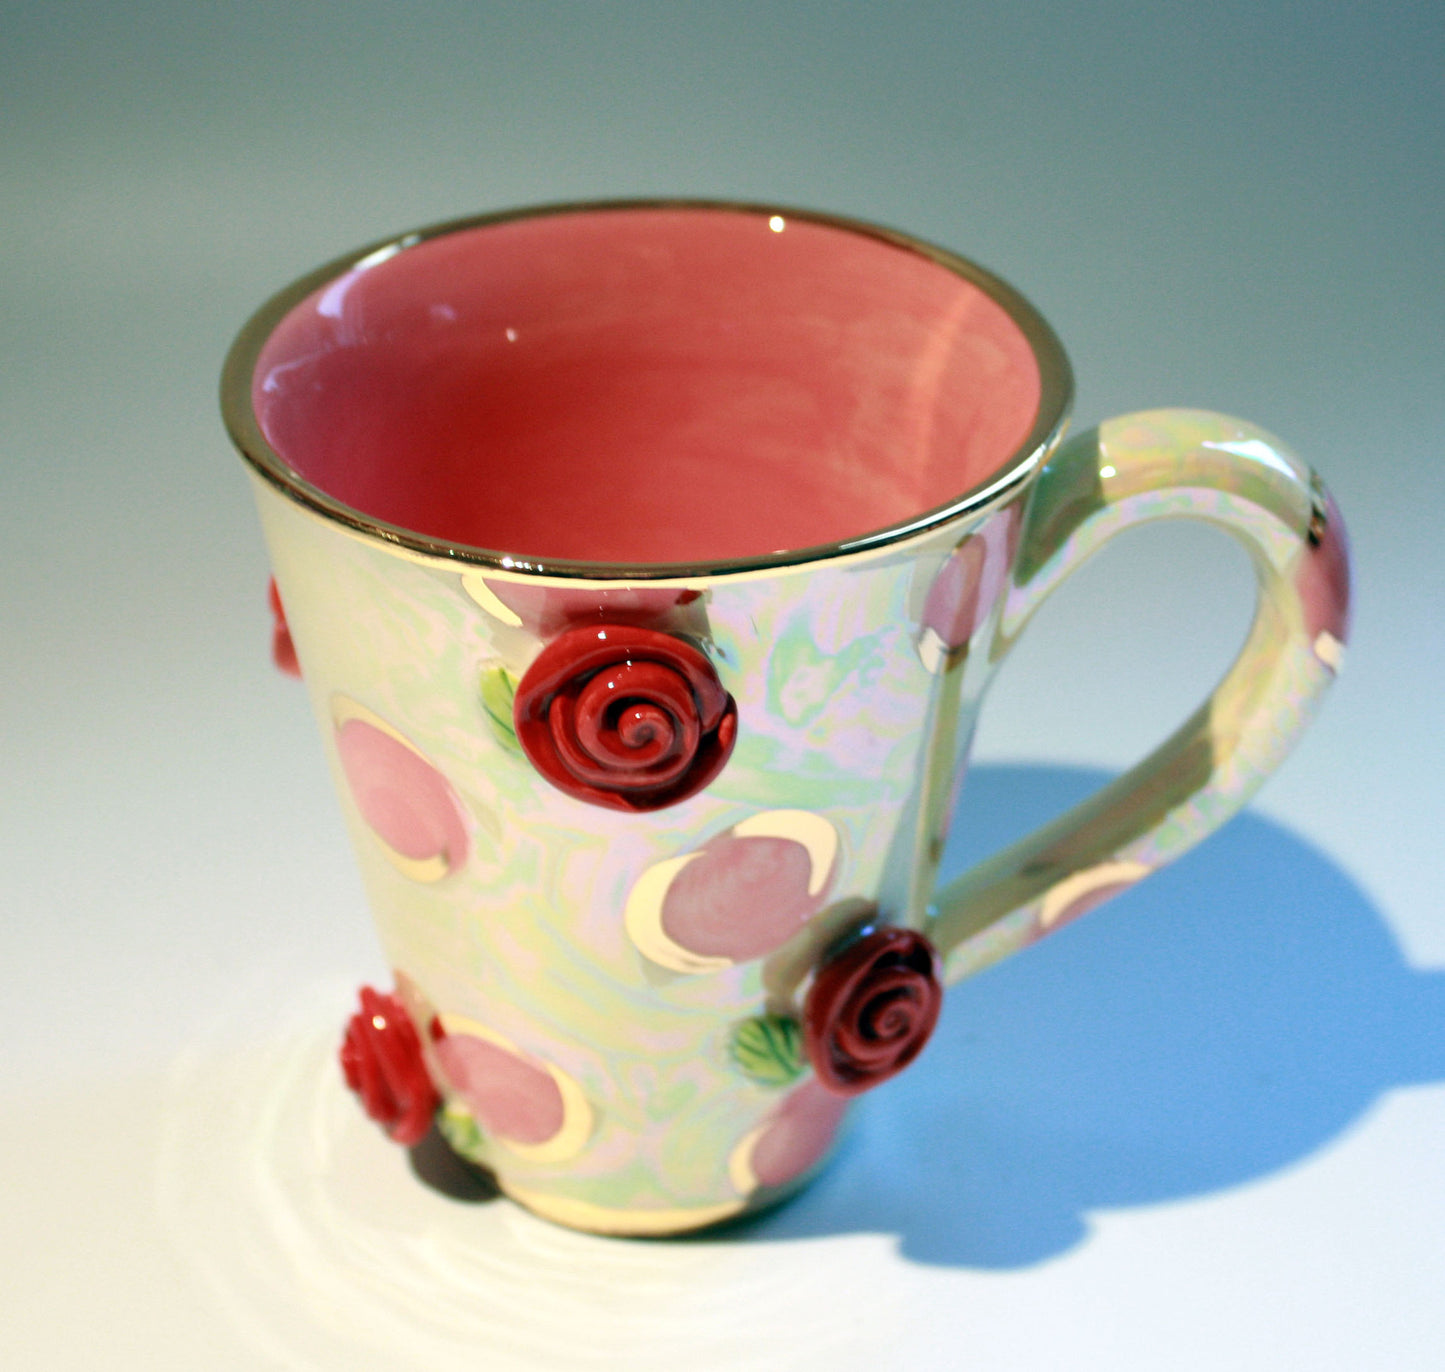 Rose Studded Mug Pink Dots - MaryRoseYoung